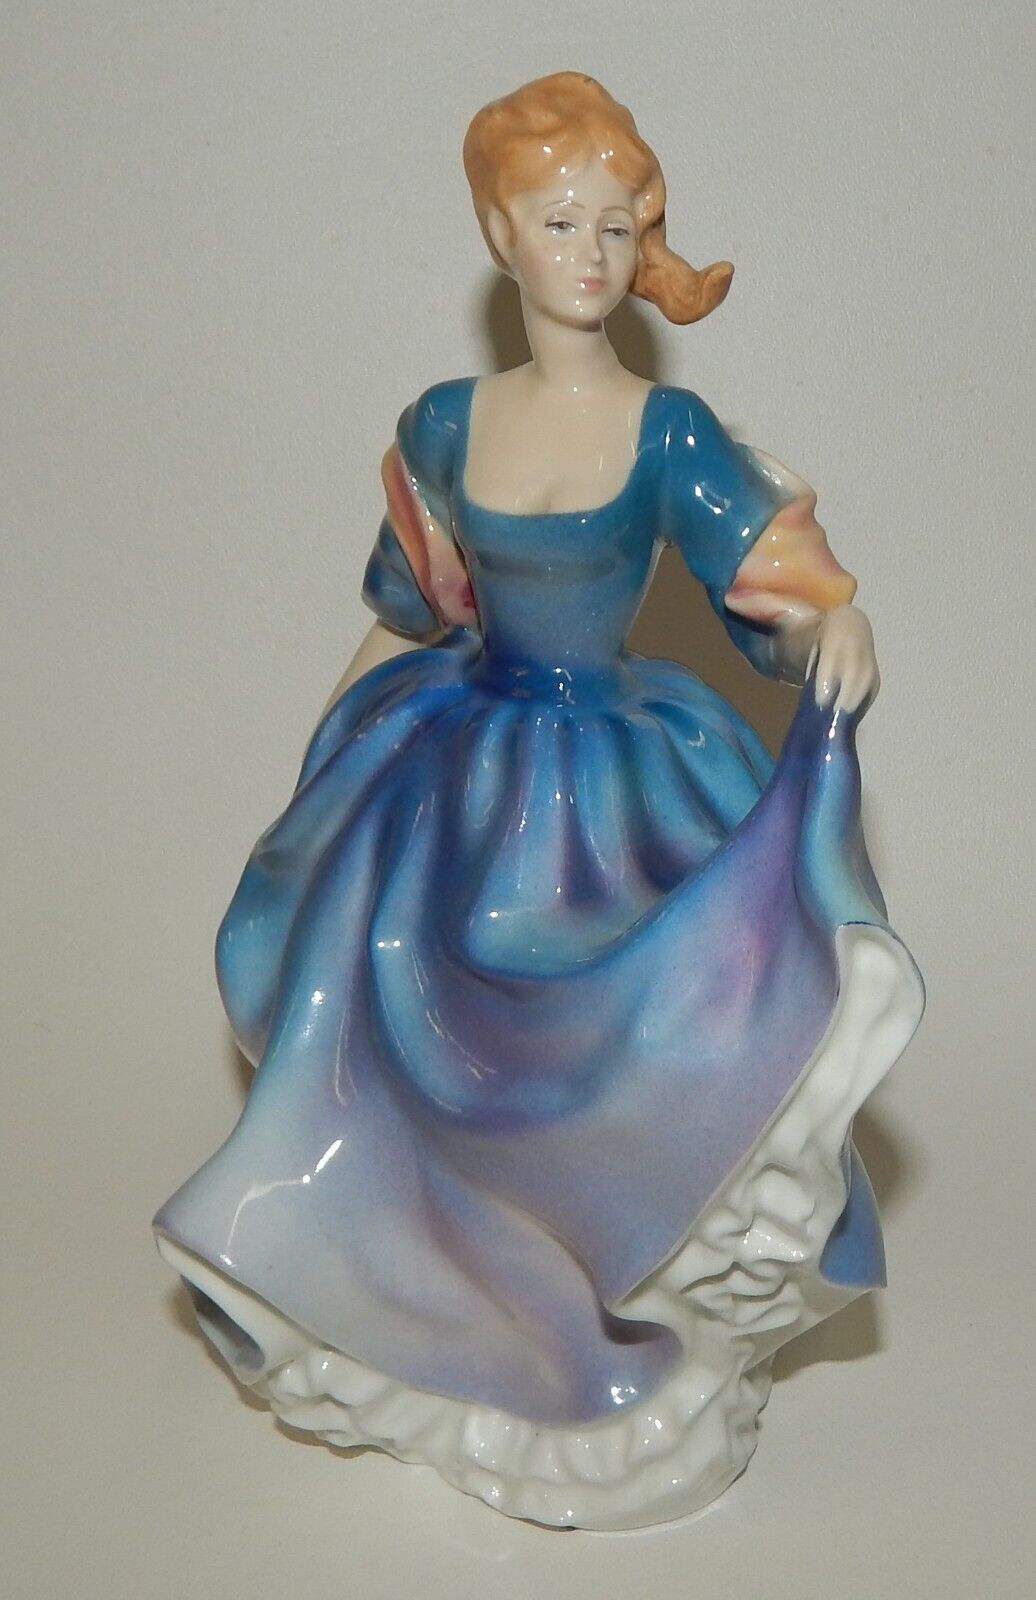 Royal Doulton Elizabeth Lady Figurine HN2465 1990